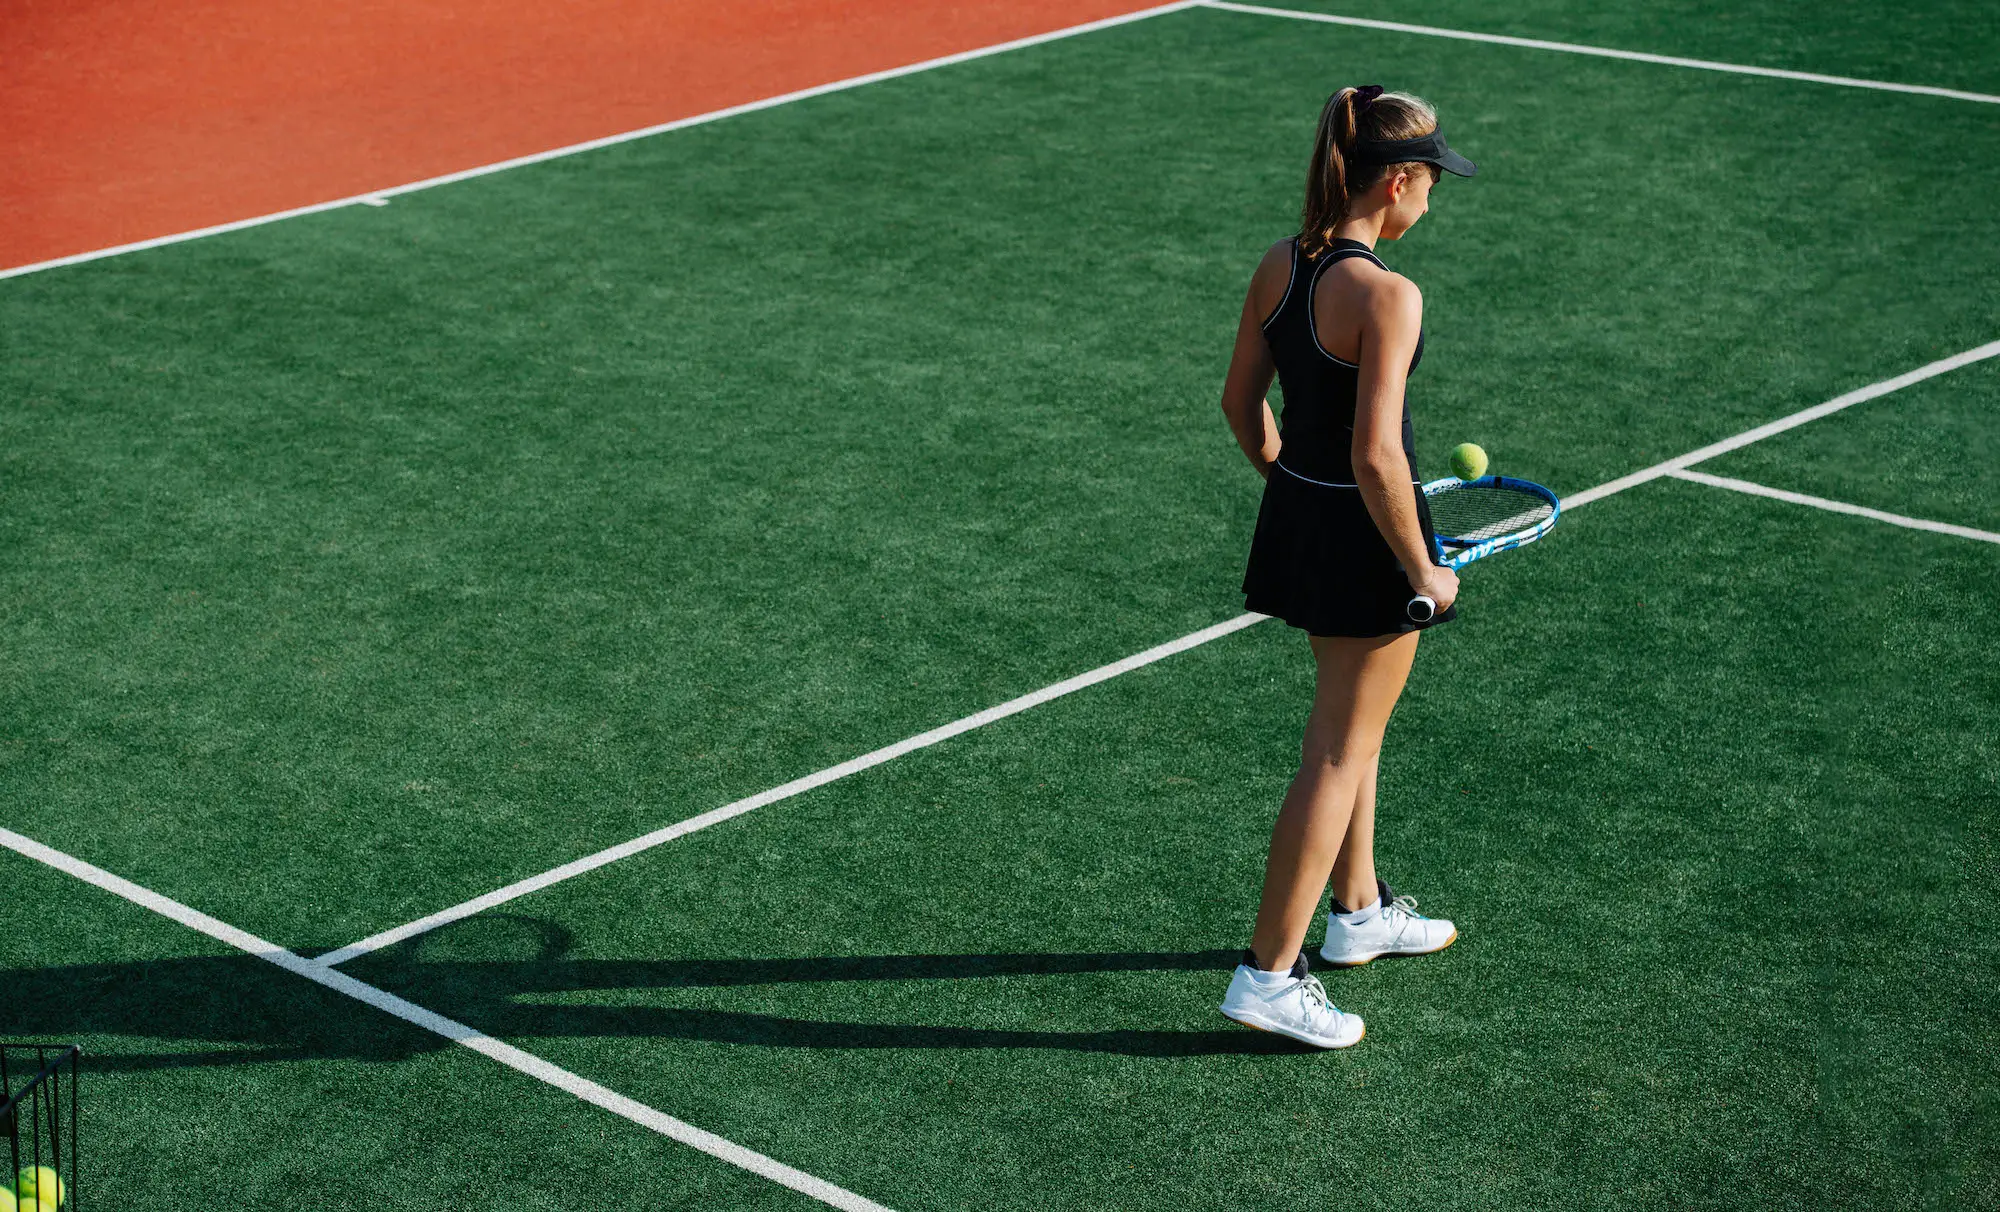 tennis player standing on artificial grass court